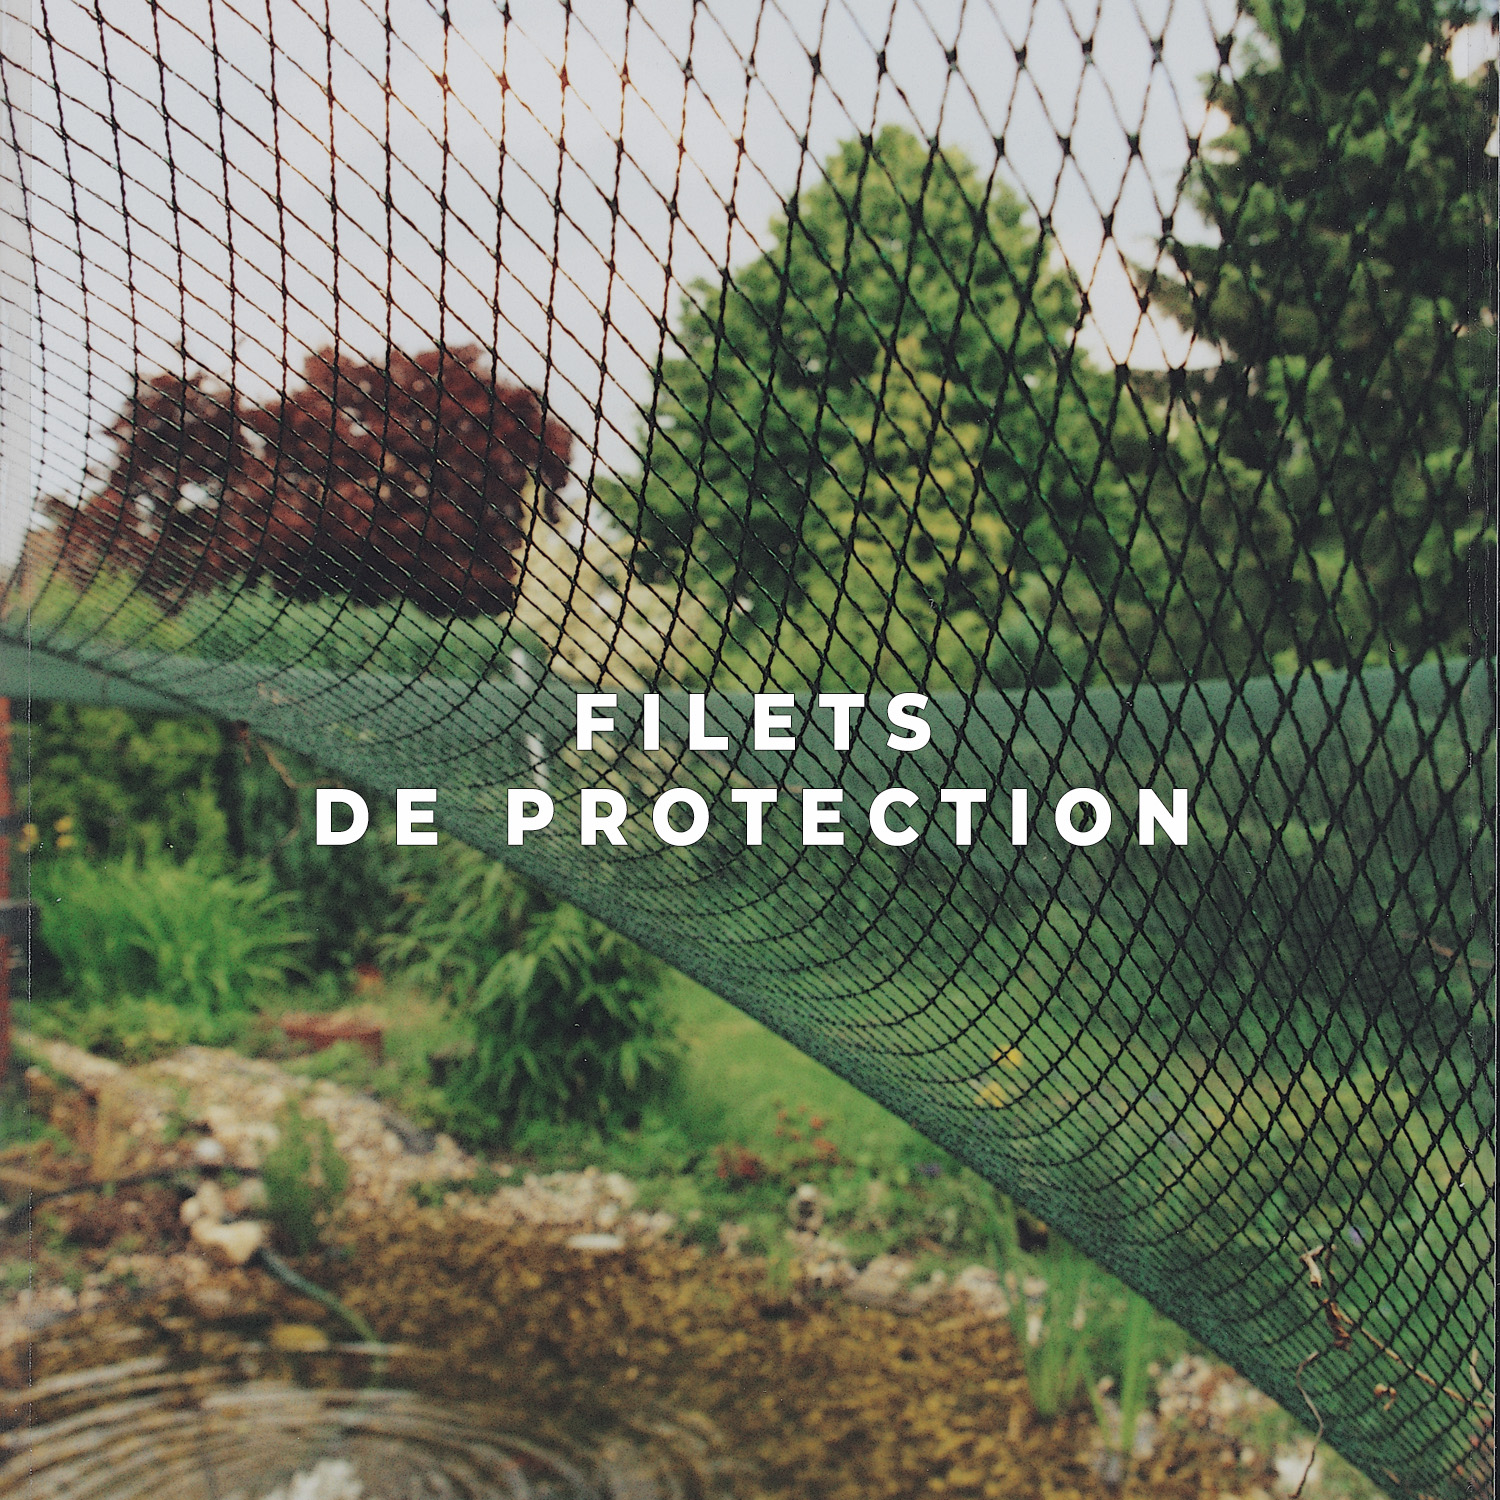 Filet de rétention pour étang à Poissons de Jardin à protéger Contre Le héron à Feuilles caduques avec 8 pegs 3 x 4 m ANSUG Filet de Protection de Bassin 